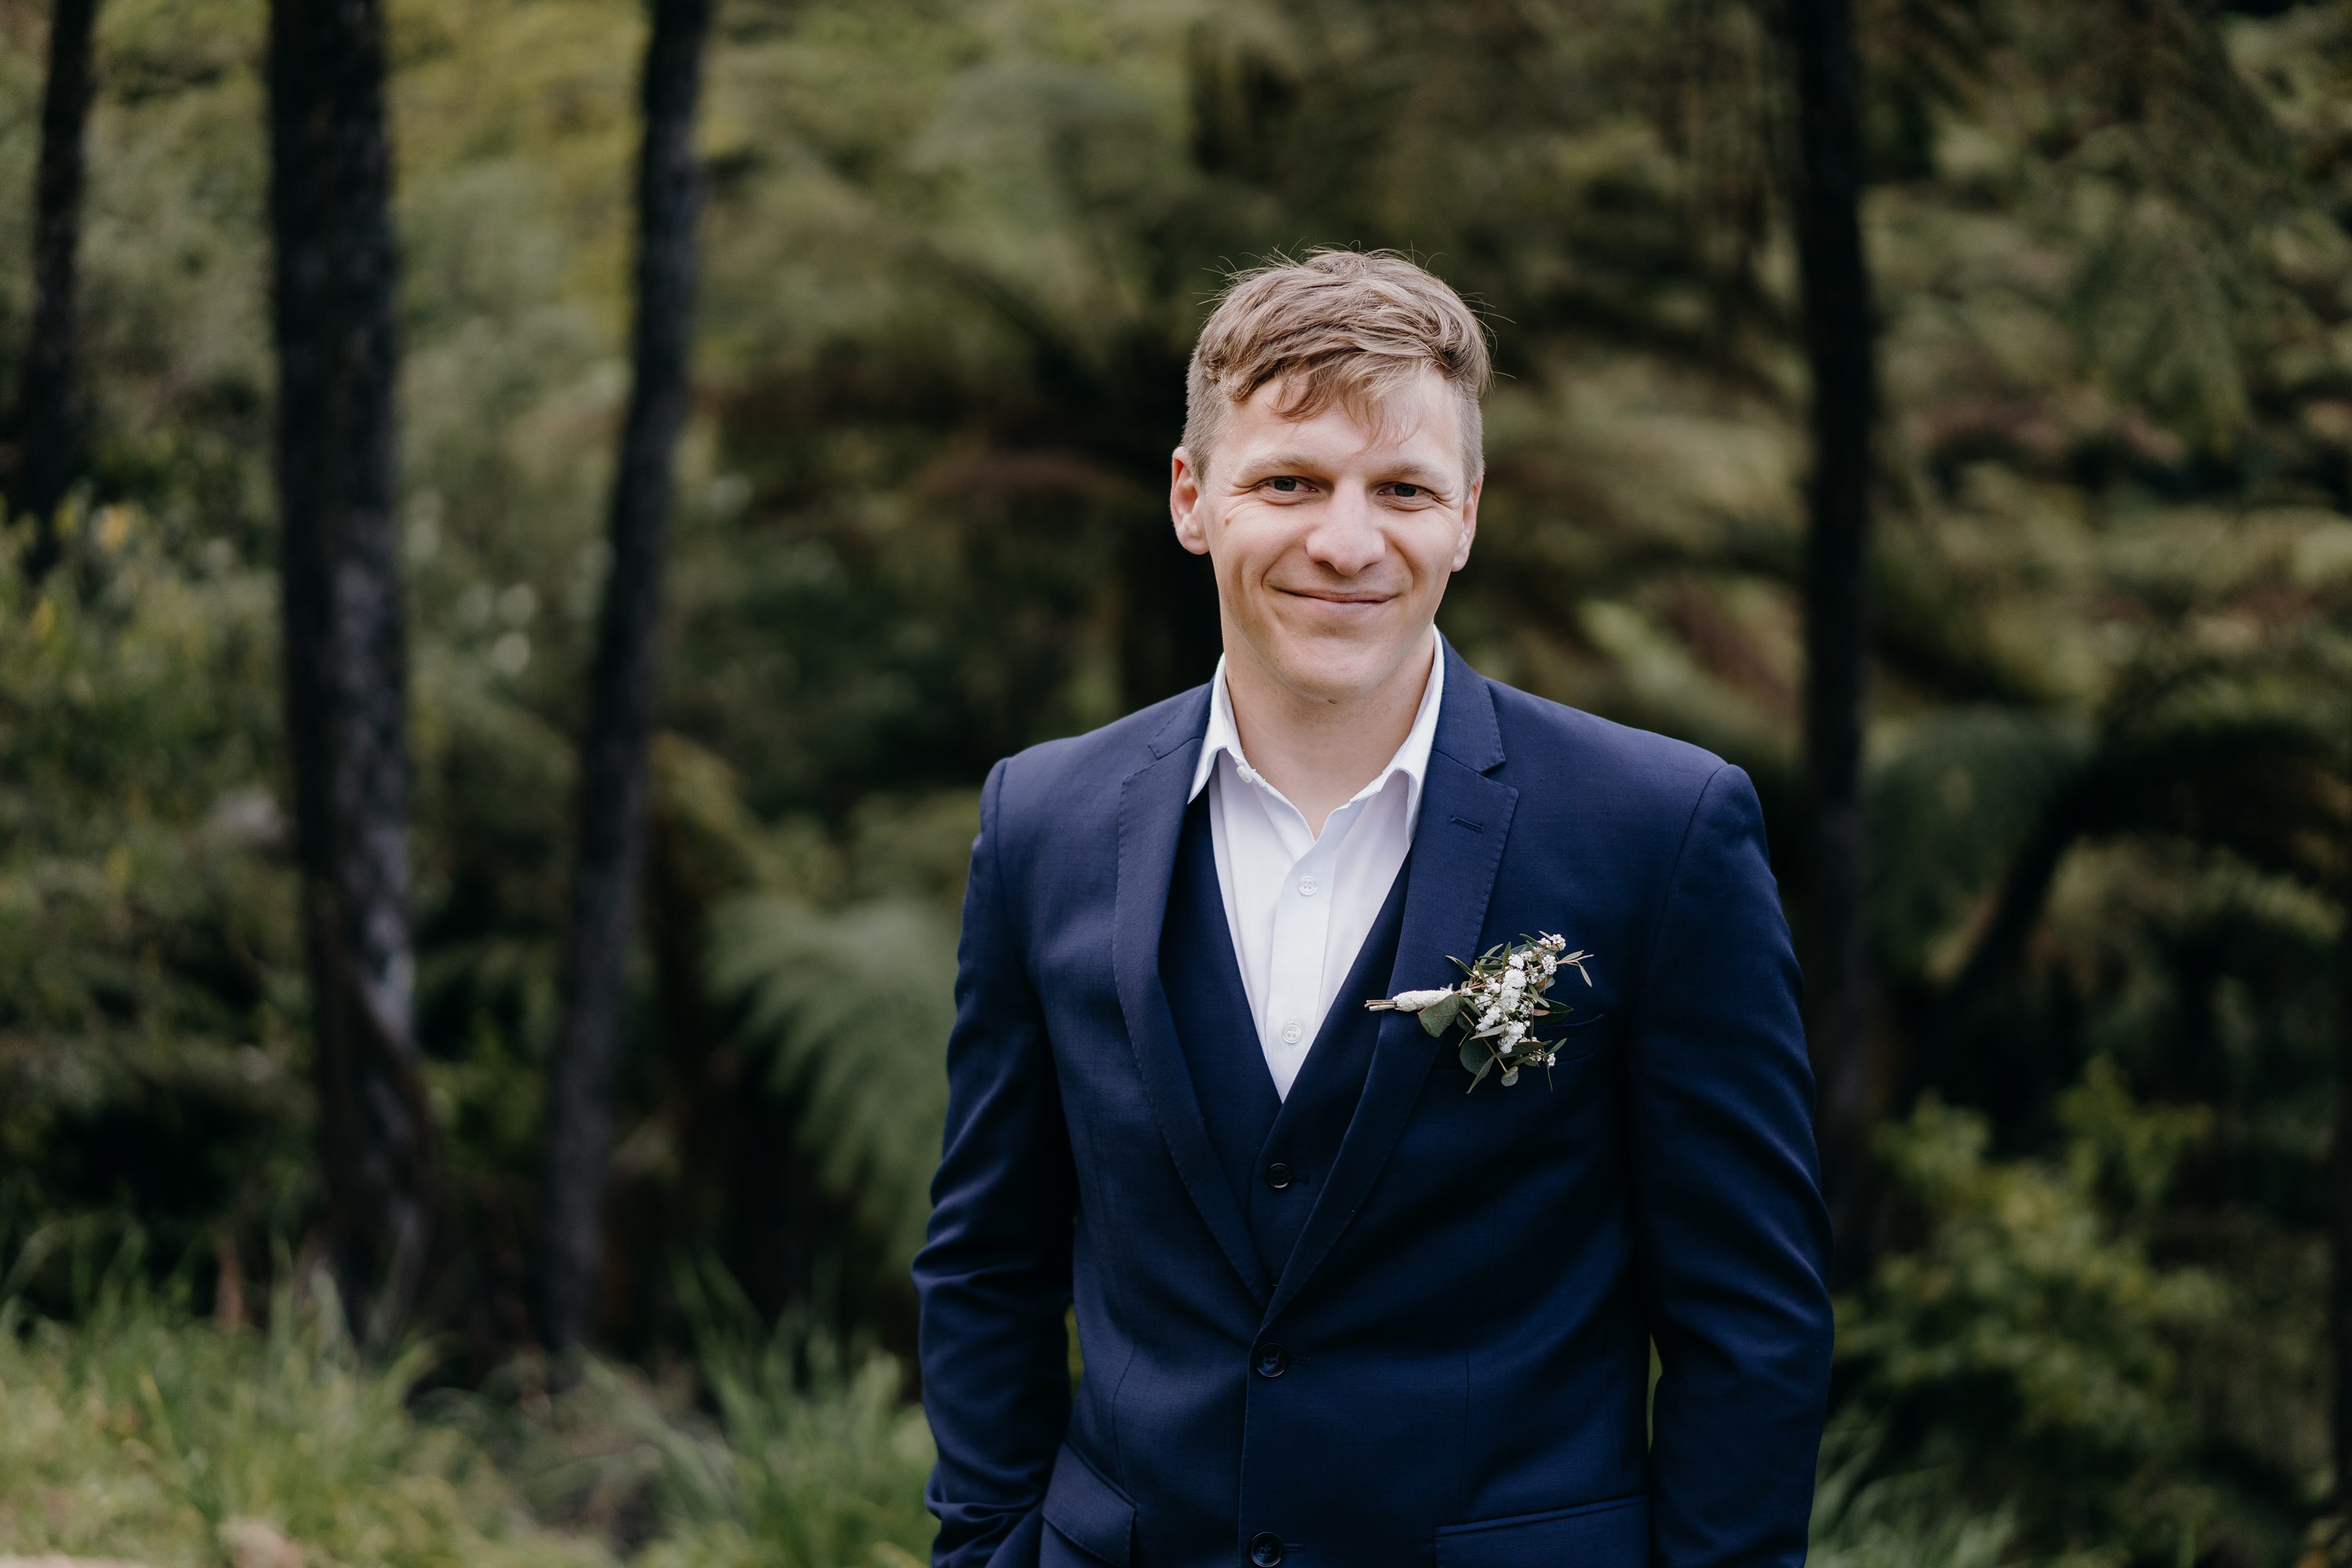 New Zealand Wedding Photographer,Intimate Wedding NZ,Groom